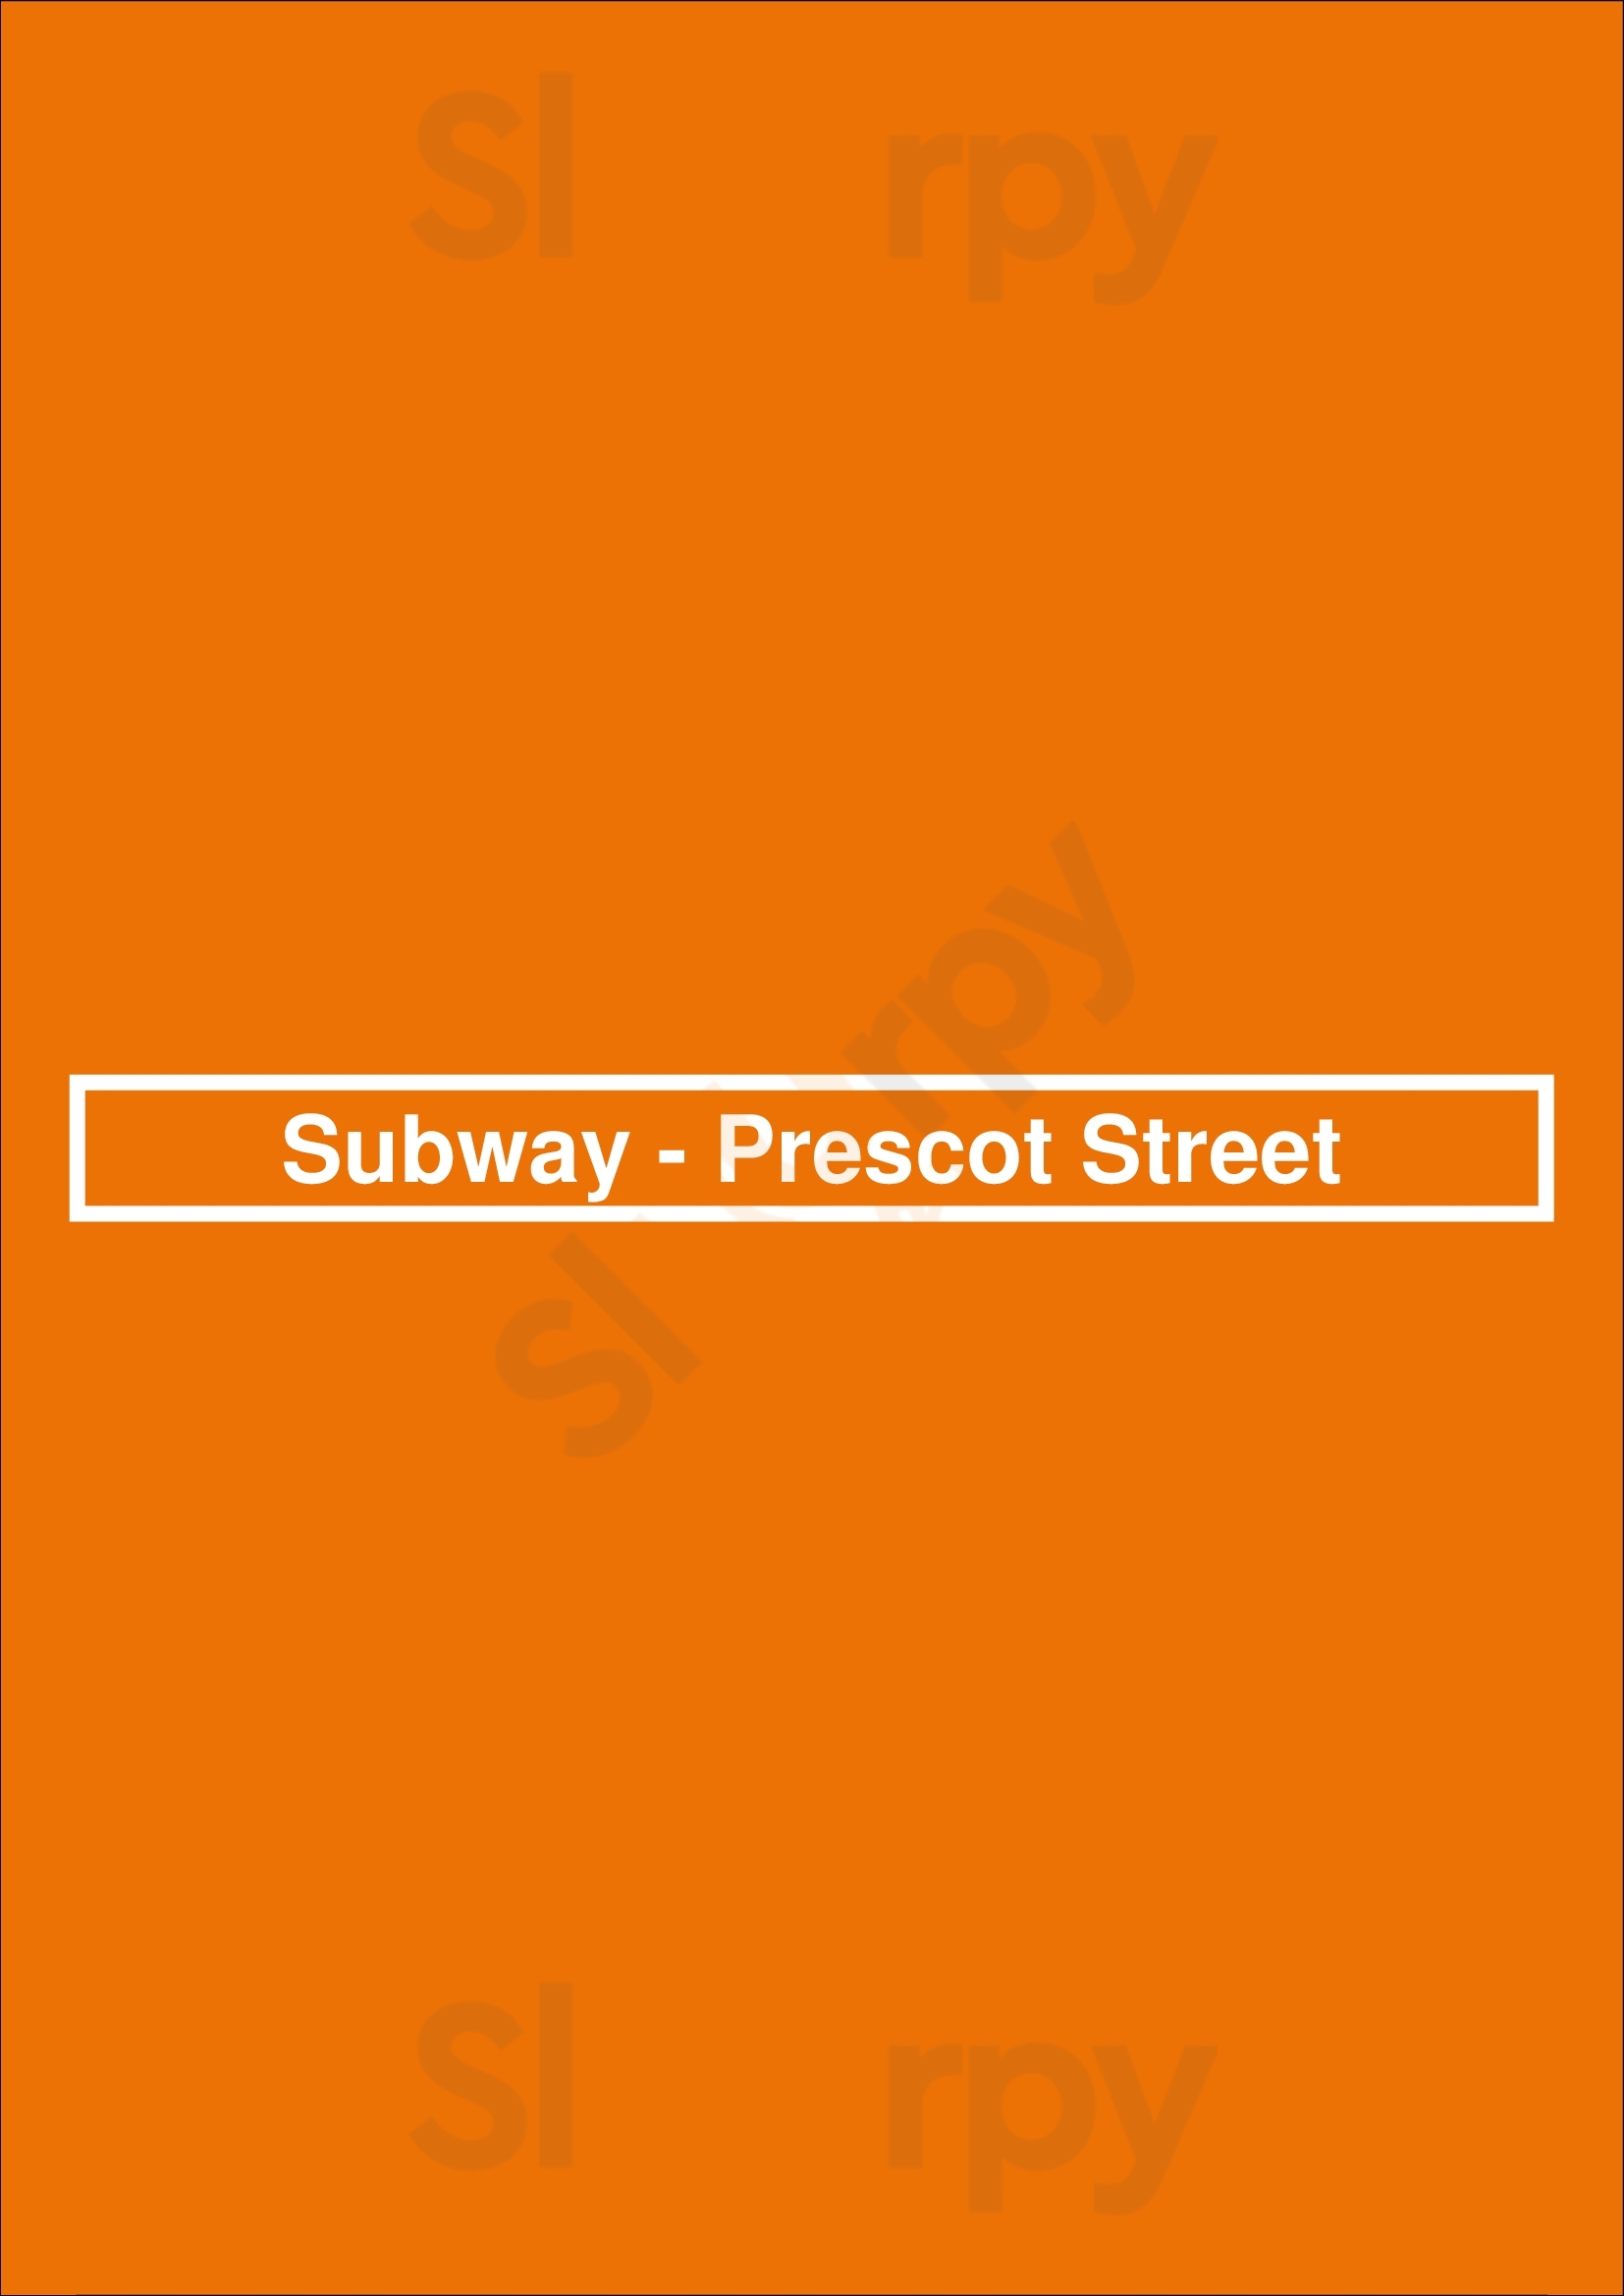 Subway - Prescot Street Liverpool Menu - 1